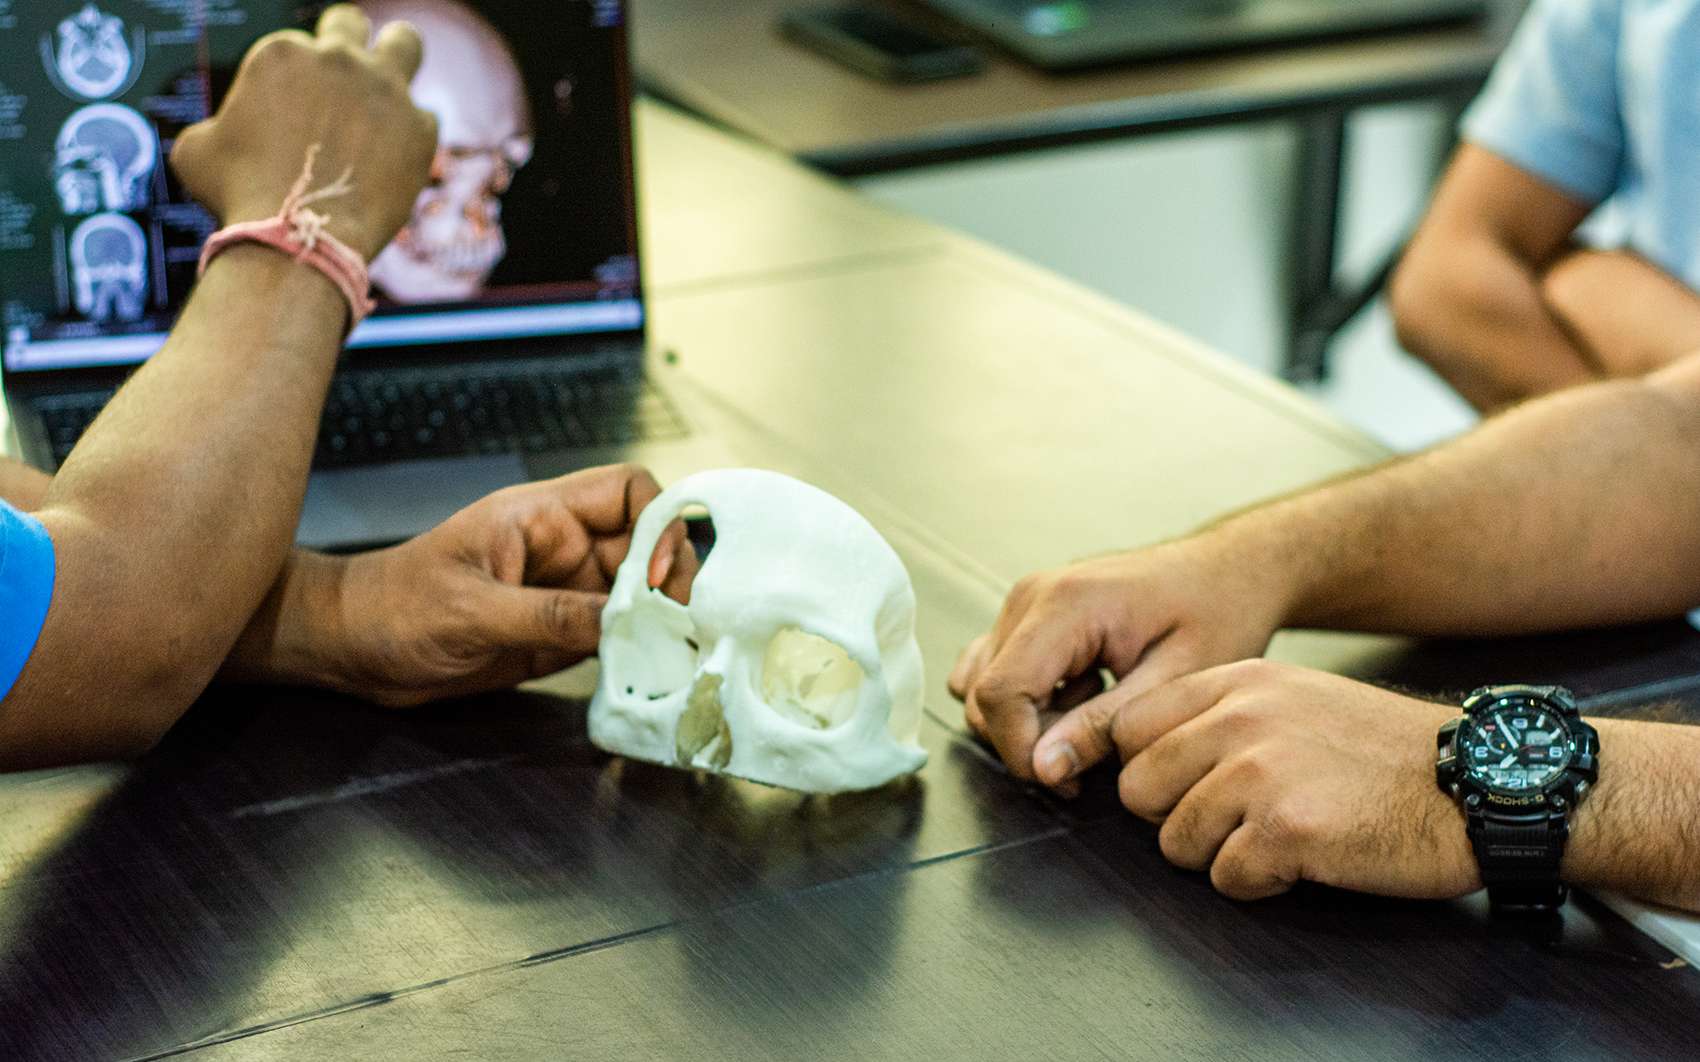 Des implants imprimés en 3D promettent de démocratiser l'accès aux soins